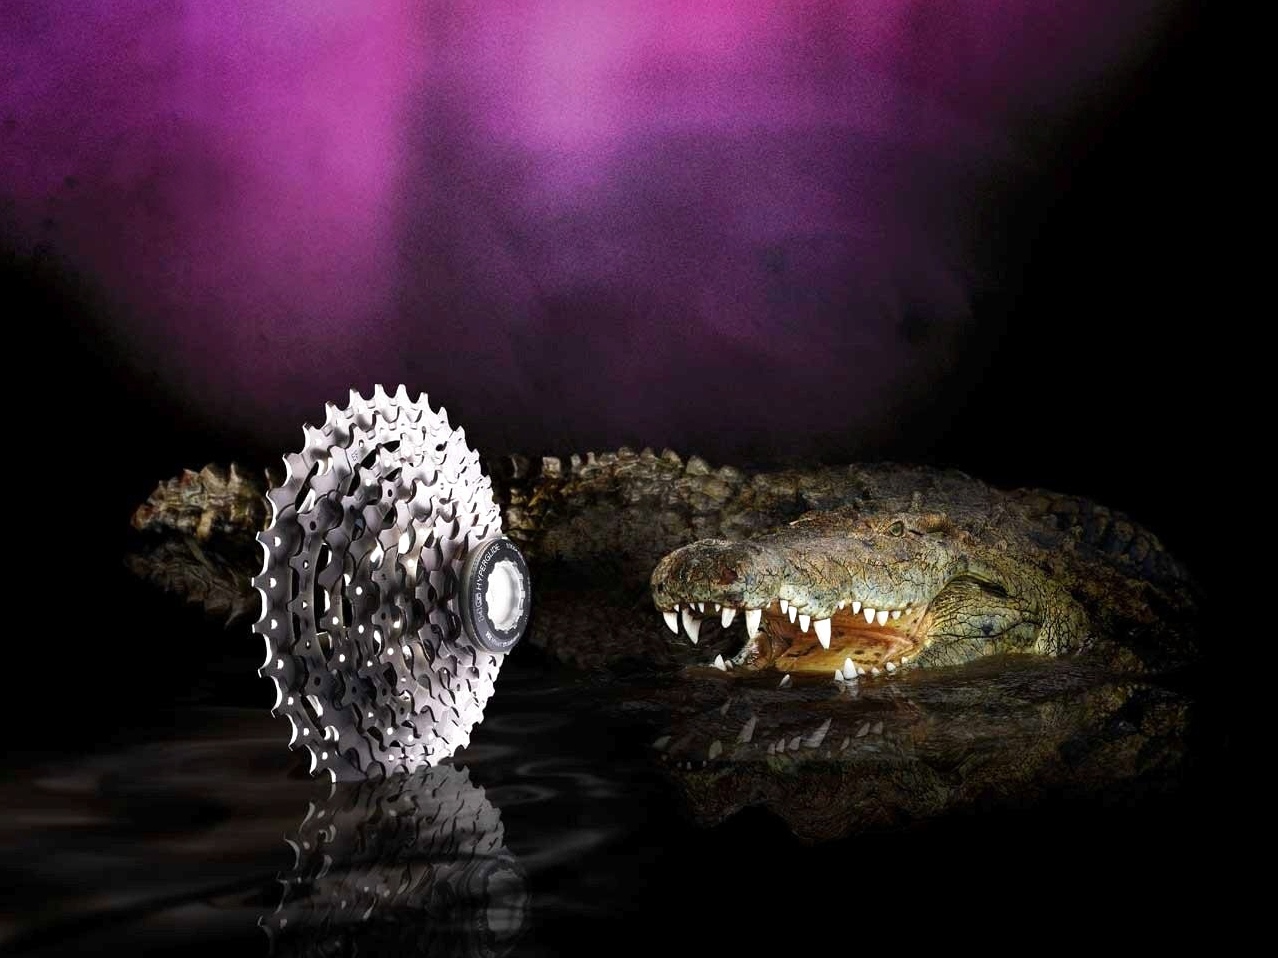 Teeth of crocodiles